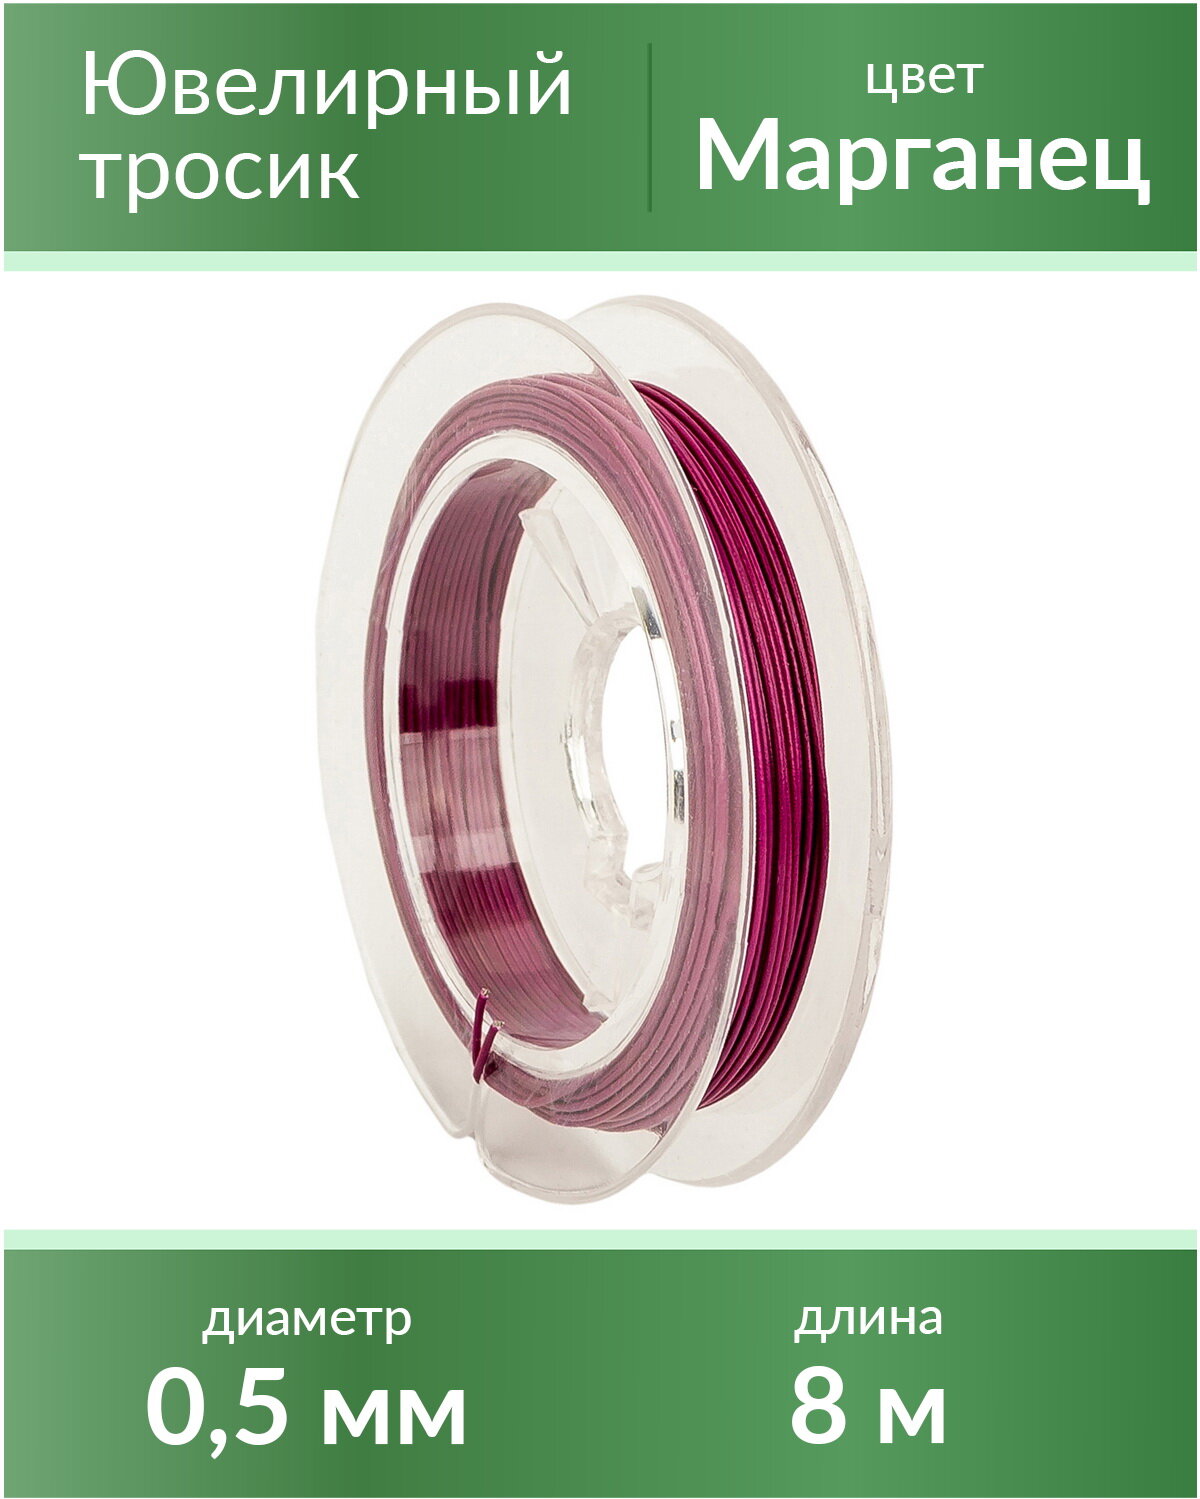 Тросик ювелирный (ланка), диаметр 0,5 мм, цвет: марганец